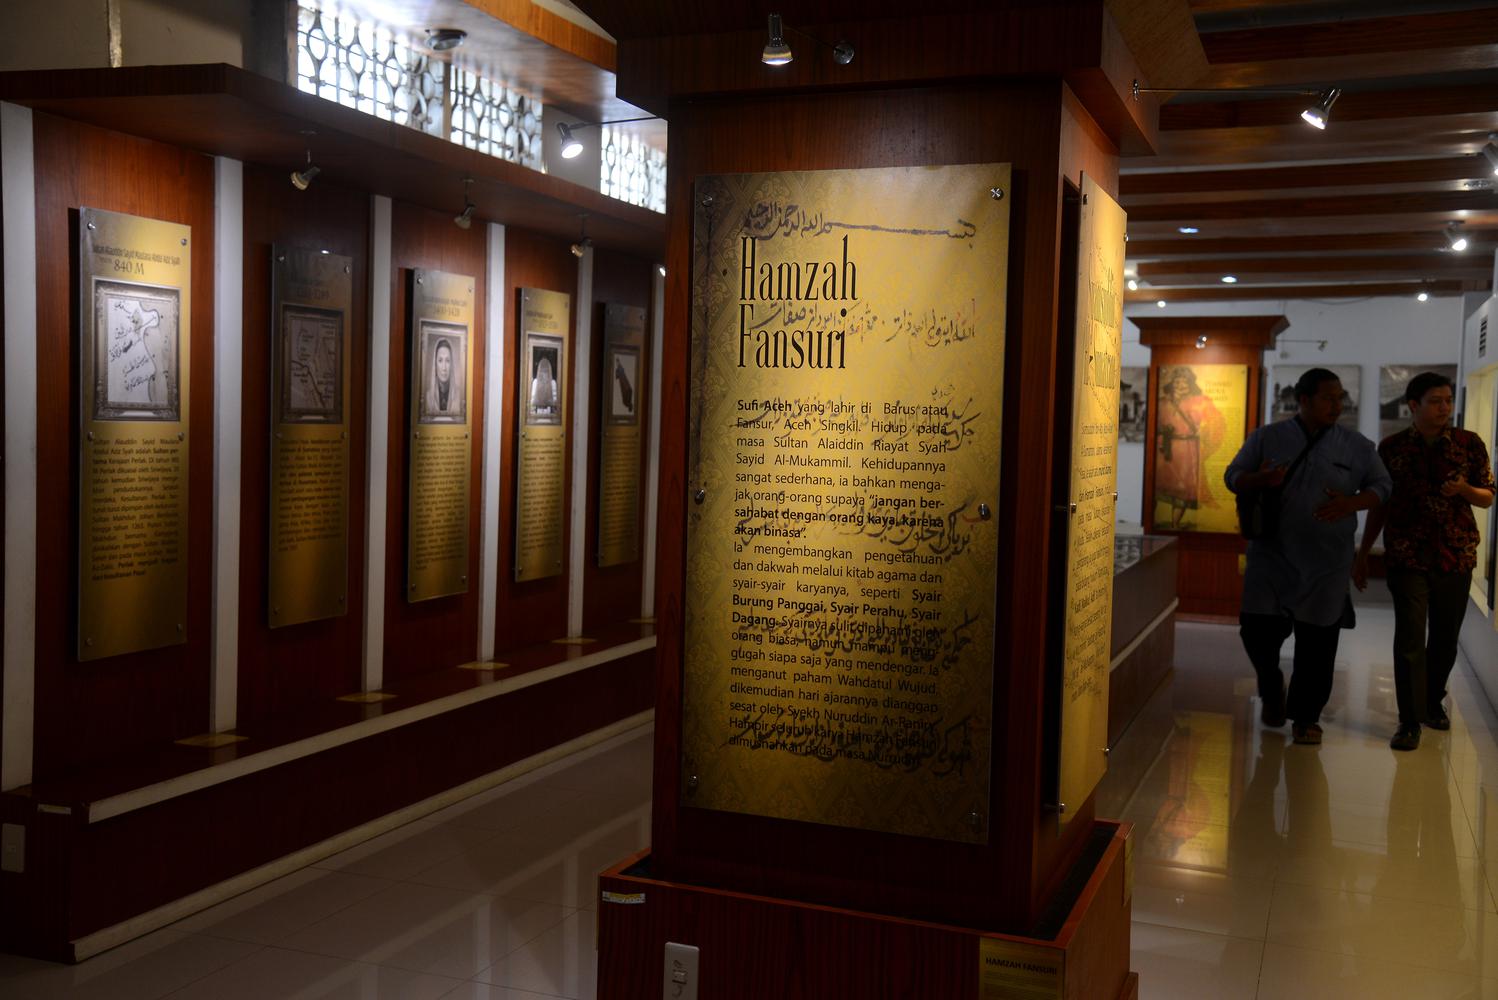 Ilustrasi, pengunjung mengamati berbagai contoh teks deskripsi tentang sejarah masuk dan berkembangnya agama Islam di Aceh di Museum Aceh di Banda Aceh.